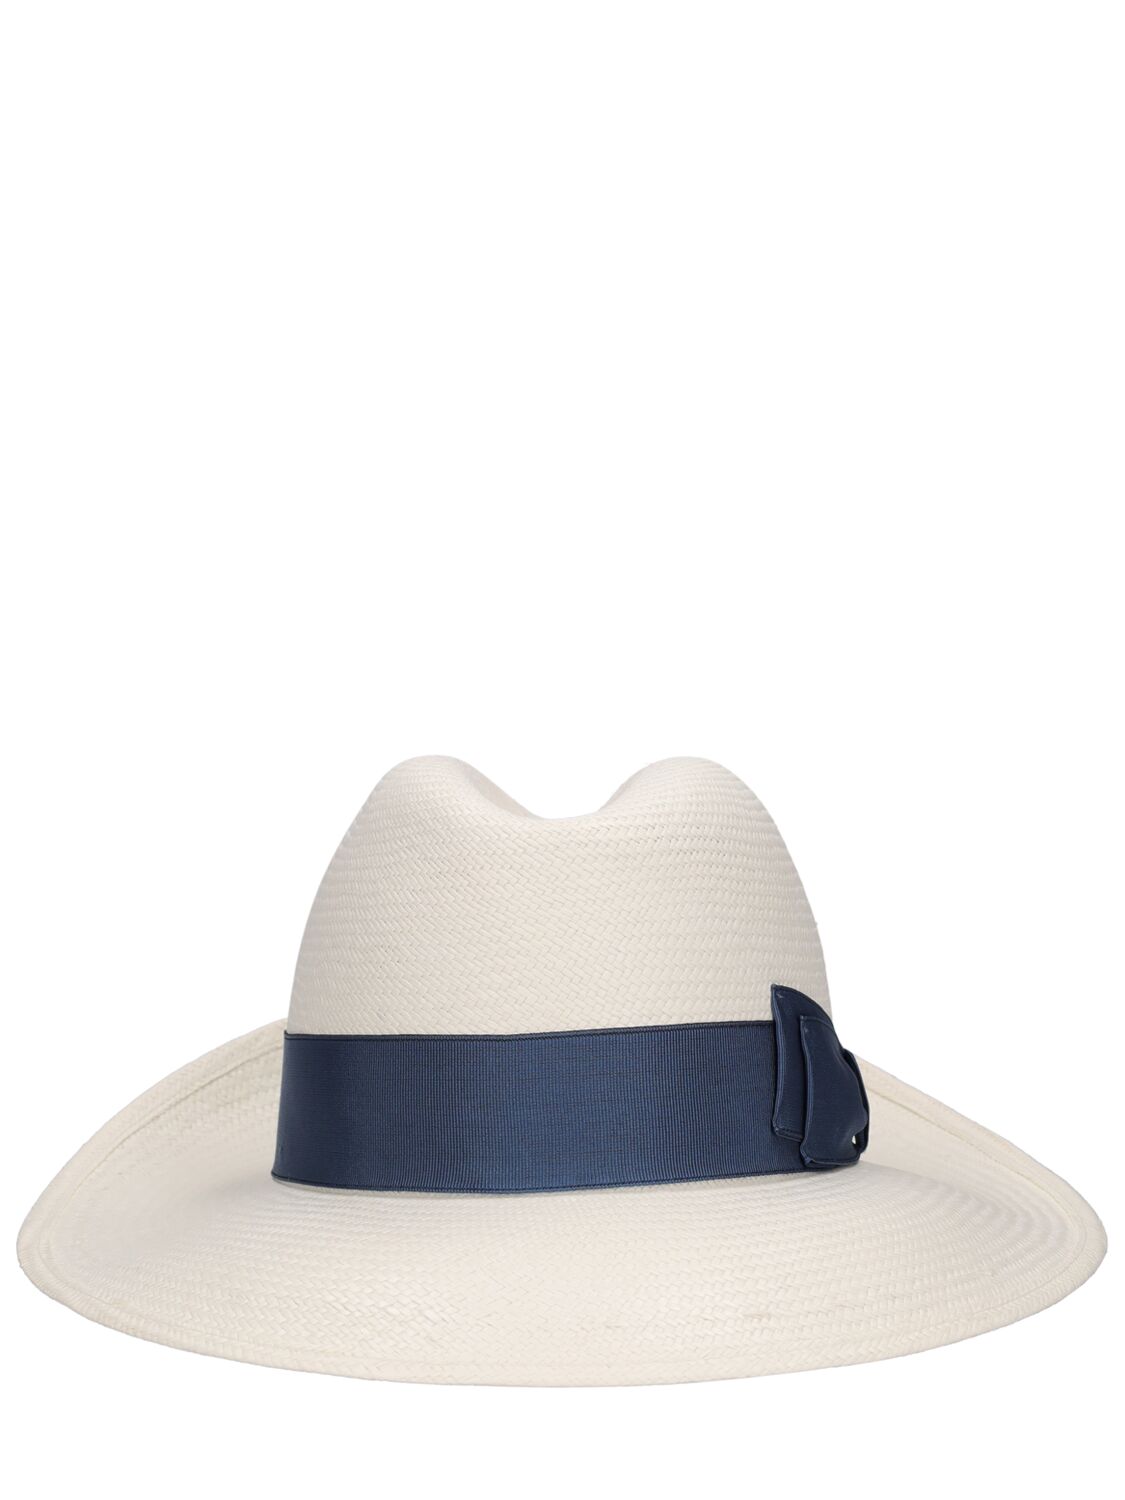 Borsalino Giulietta Fine Panama Hat In White,indolo